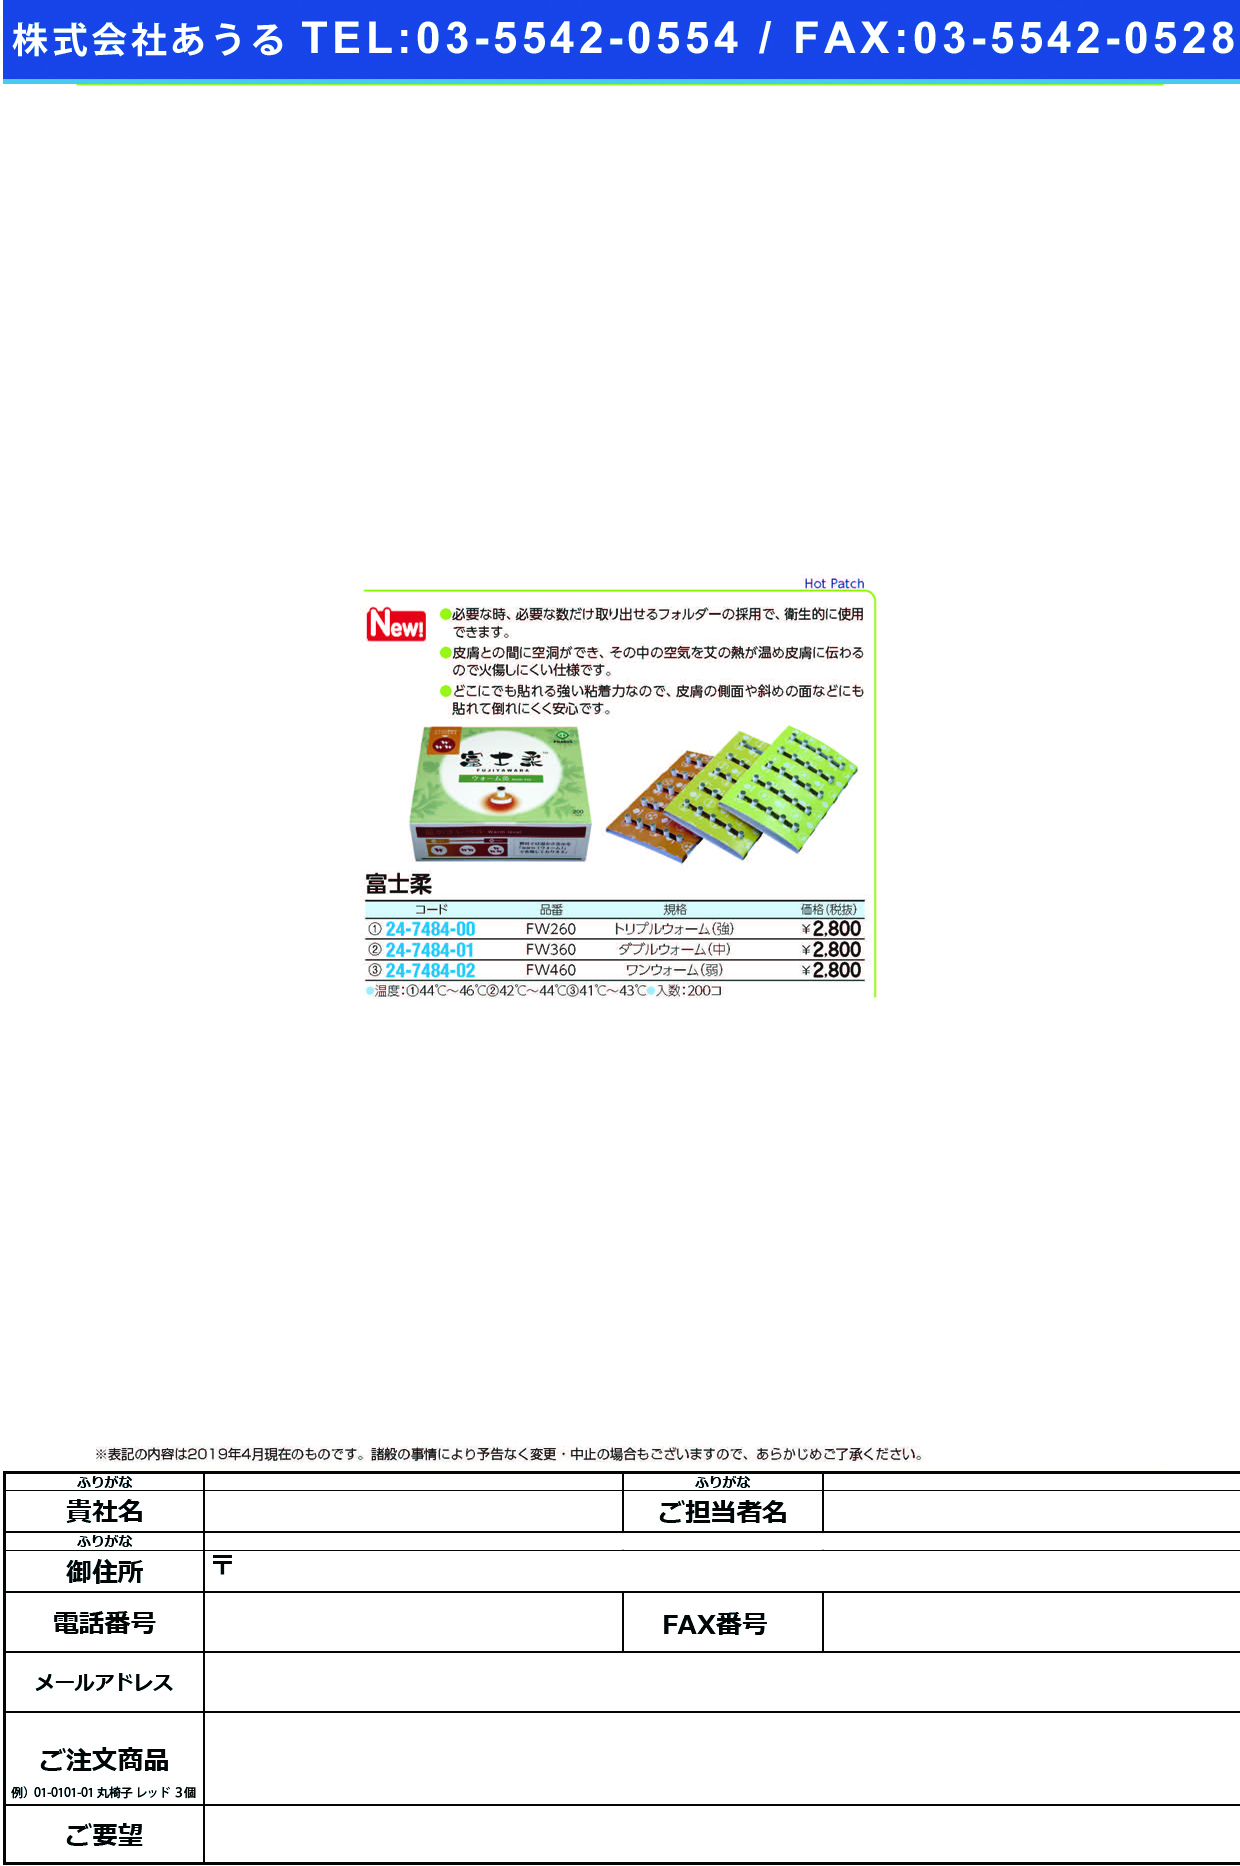 (24-7484-02)富士柔FW460(ﾜﾝｳｫｰﾑ)ｼﾞｬｸ ﾌｼﾞﾔﾜﾗ(ファロス)【1箱単位】【2019年カタログ商品】